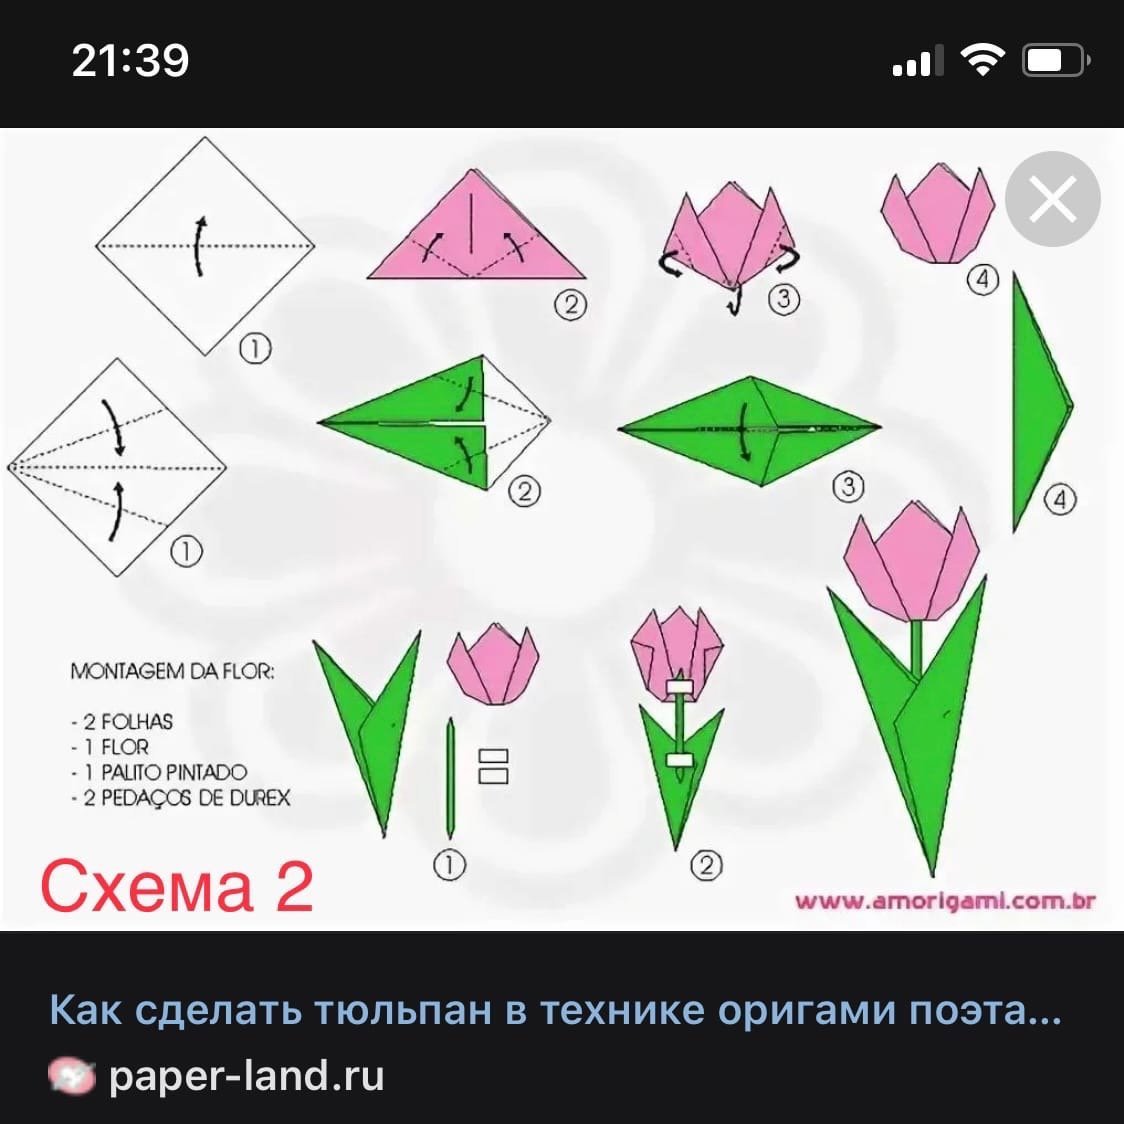 Тюльпаны из бумаги легкие для детей. Оригами тюльпан пошагово для начинающих. Схема оригами тюльпана для начинающих. Оригами тюльпан схема для начинающих пошагово. Оригами тюльпан из бумаги схема для детей.